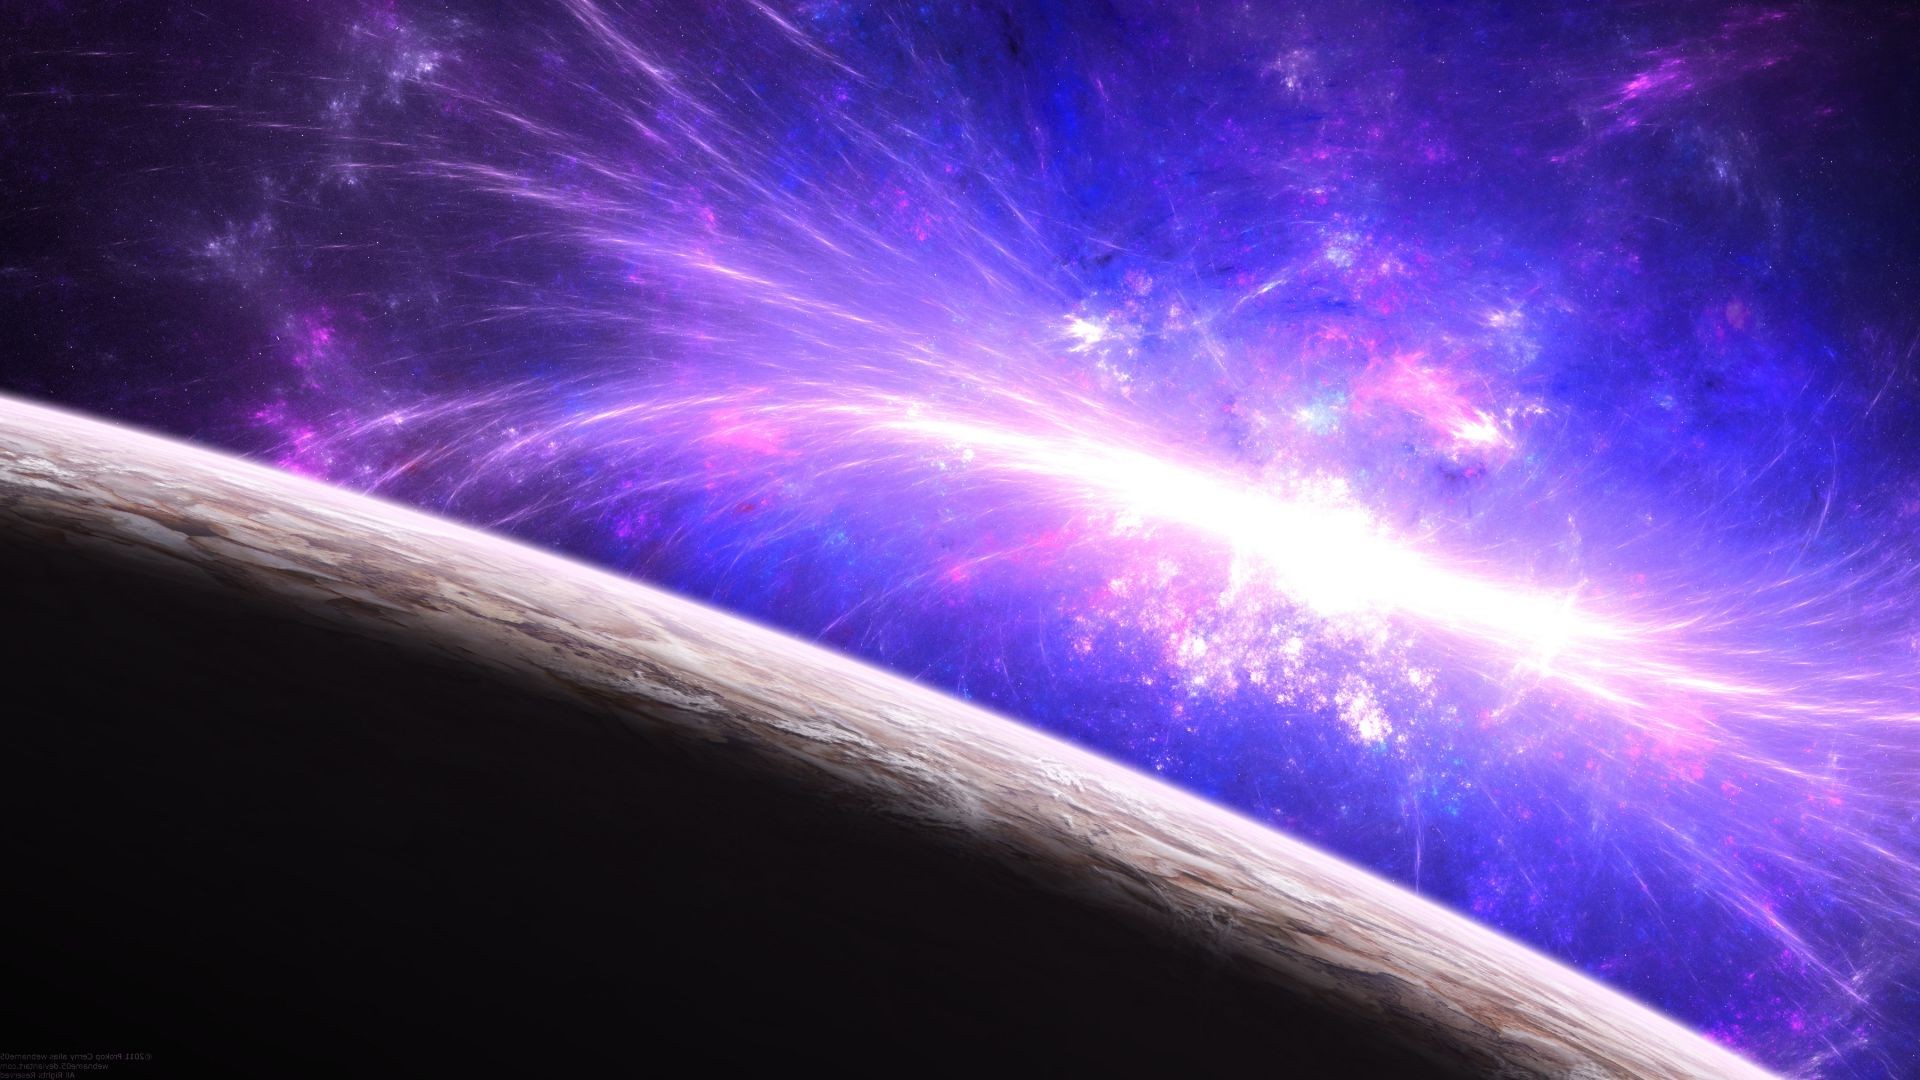 космос астрономия аннотация галактика наука фантазия свет график планеты луна движения энергии искусство размытость сюрреалистично рабочего стола